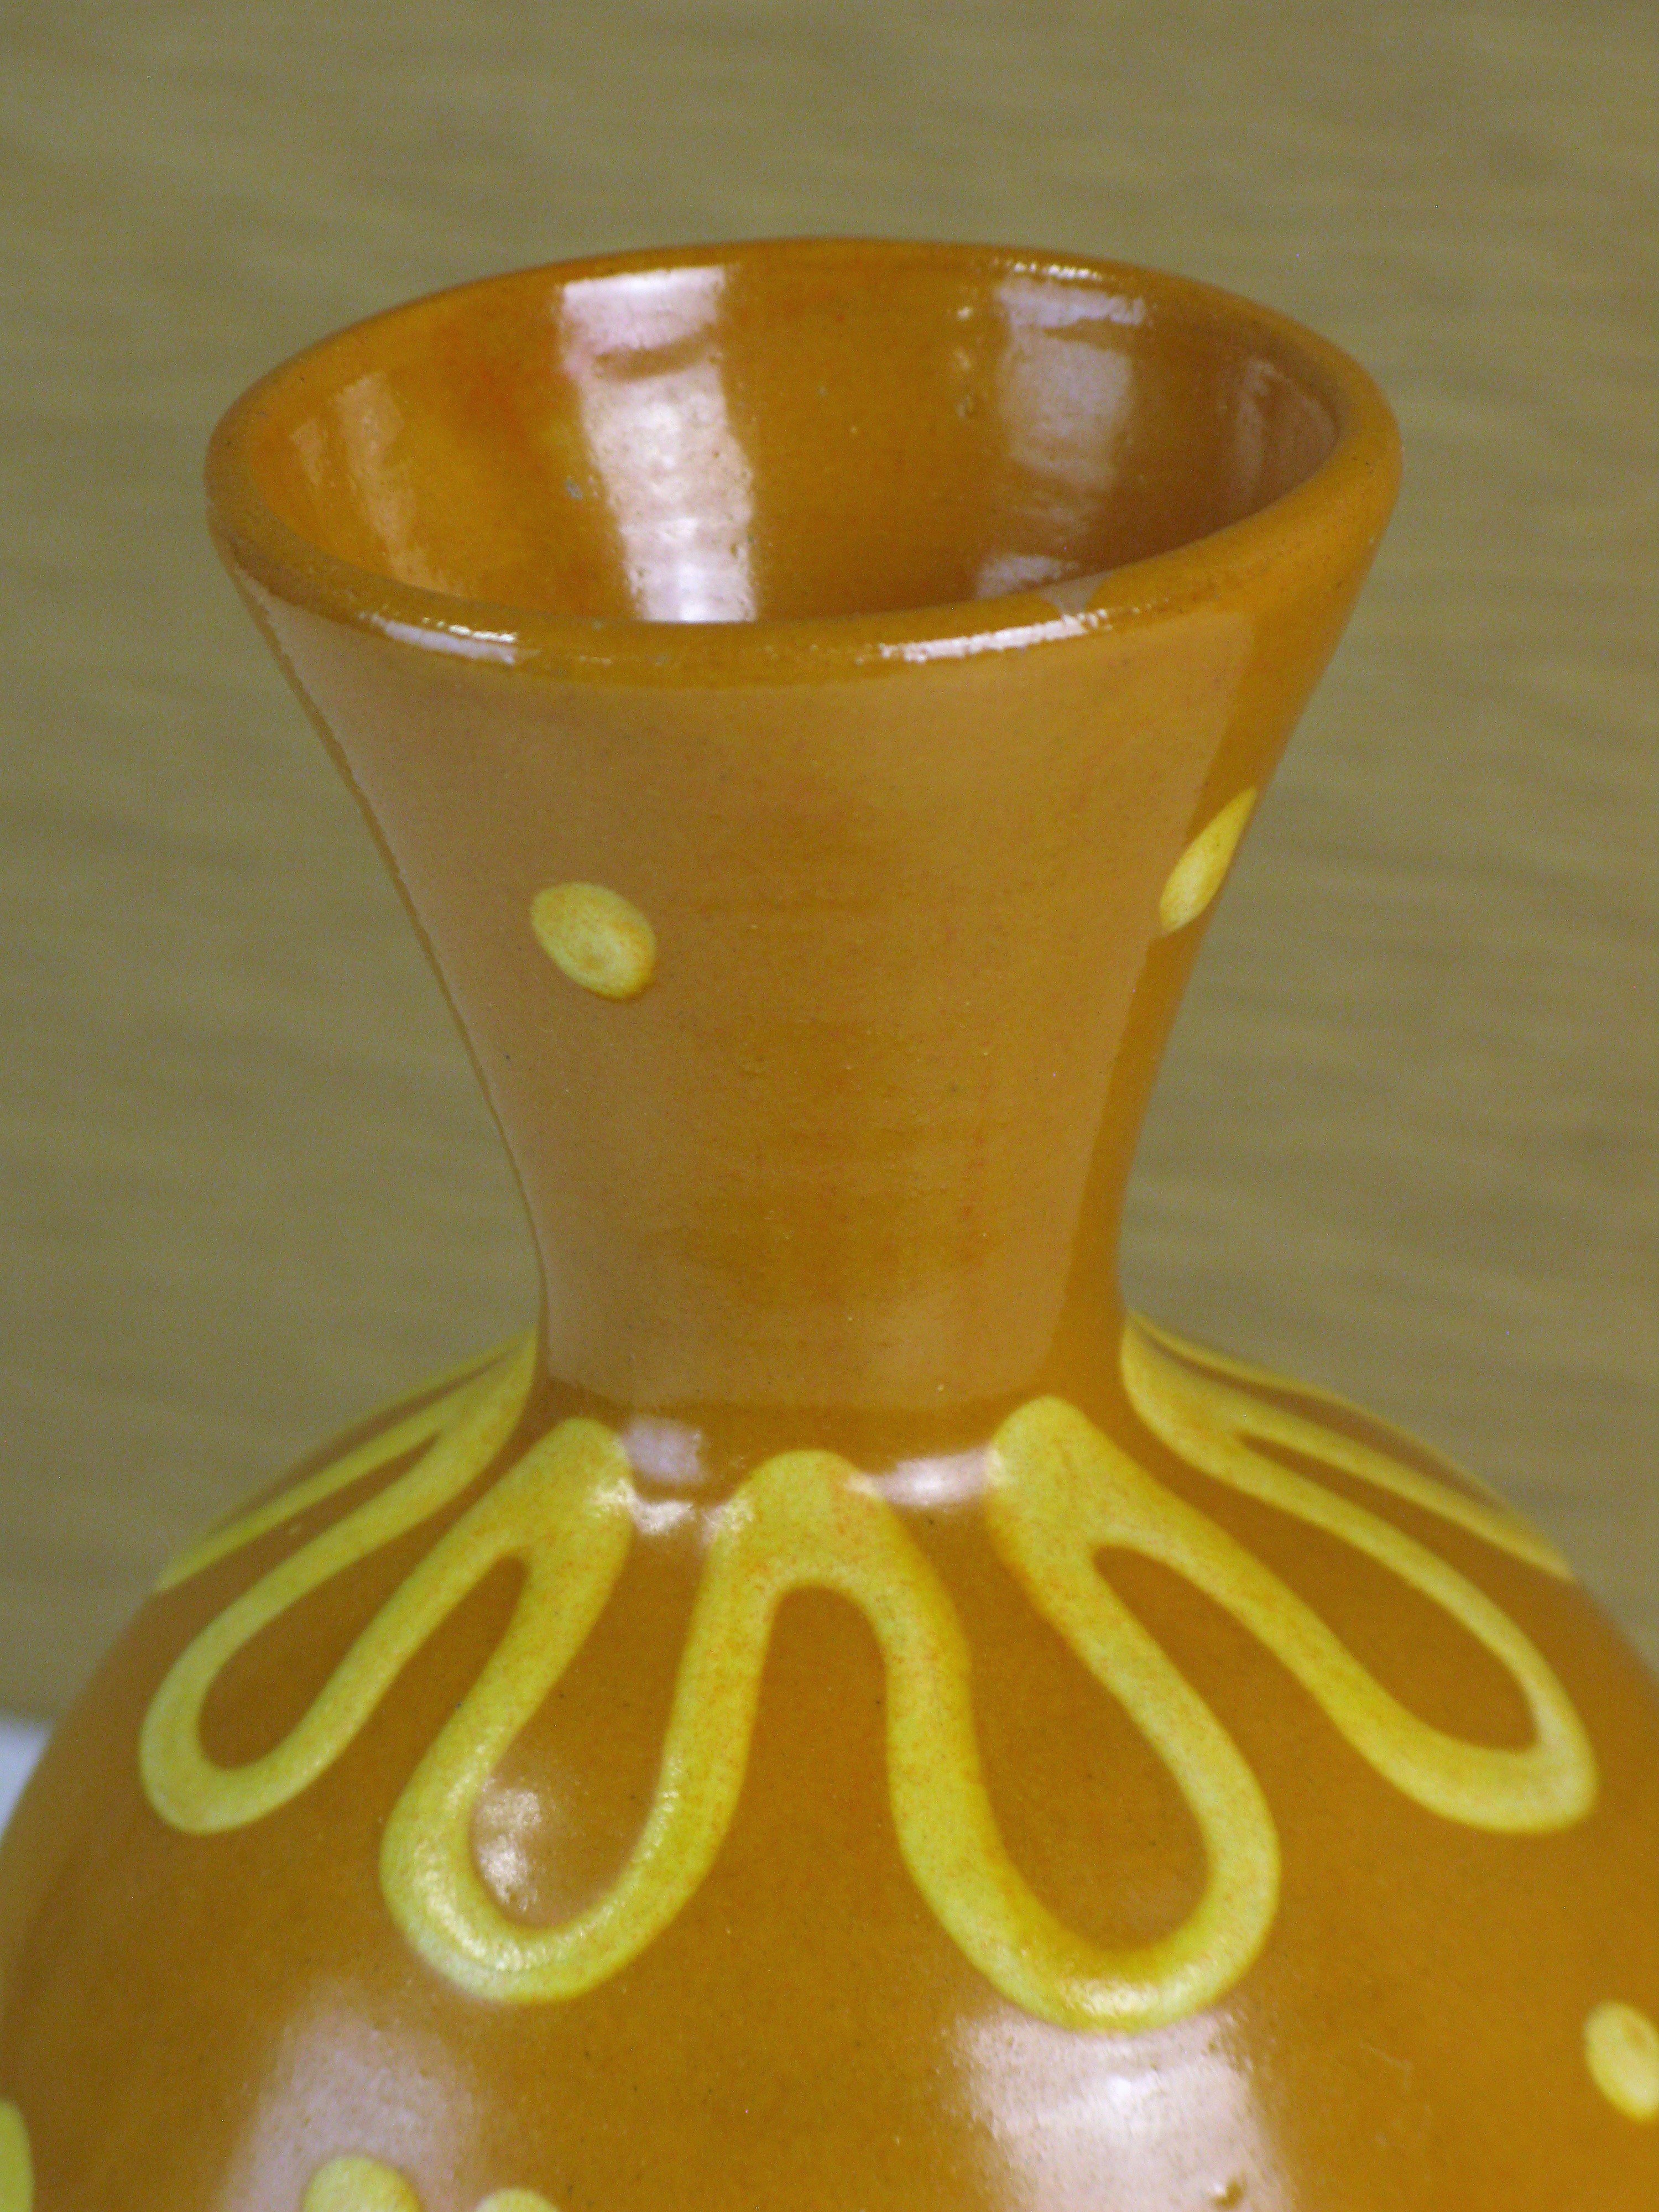 terracotta vase 246